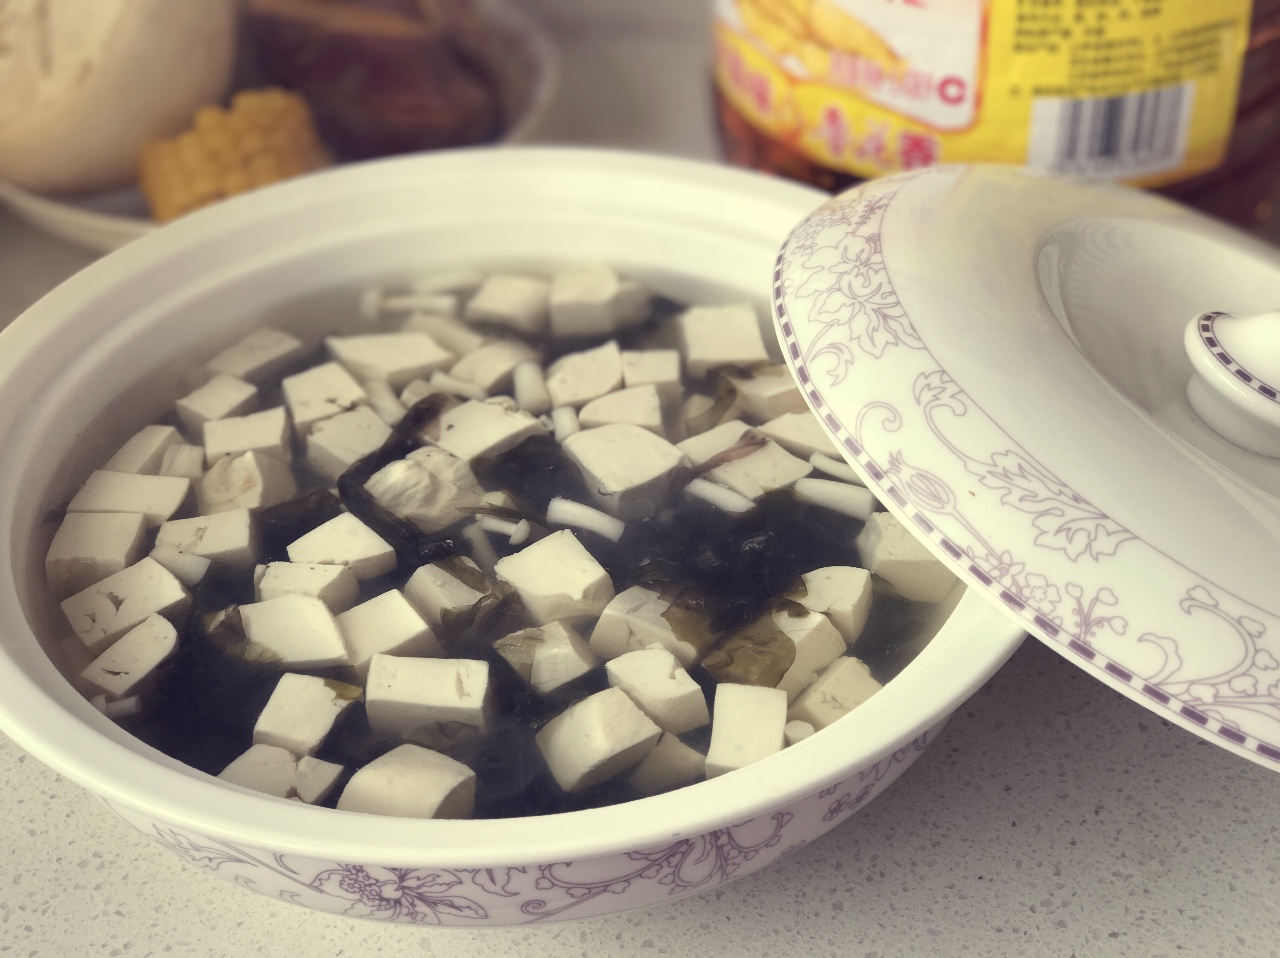 紫菜豆腐汤